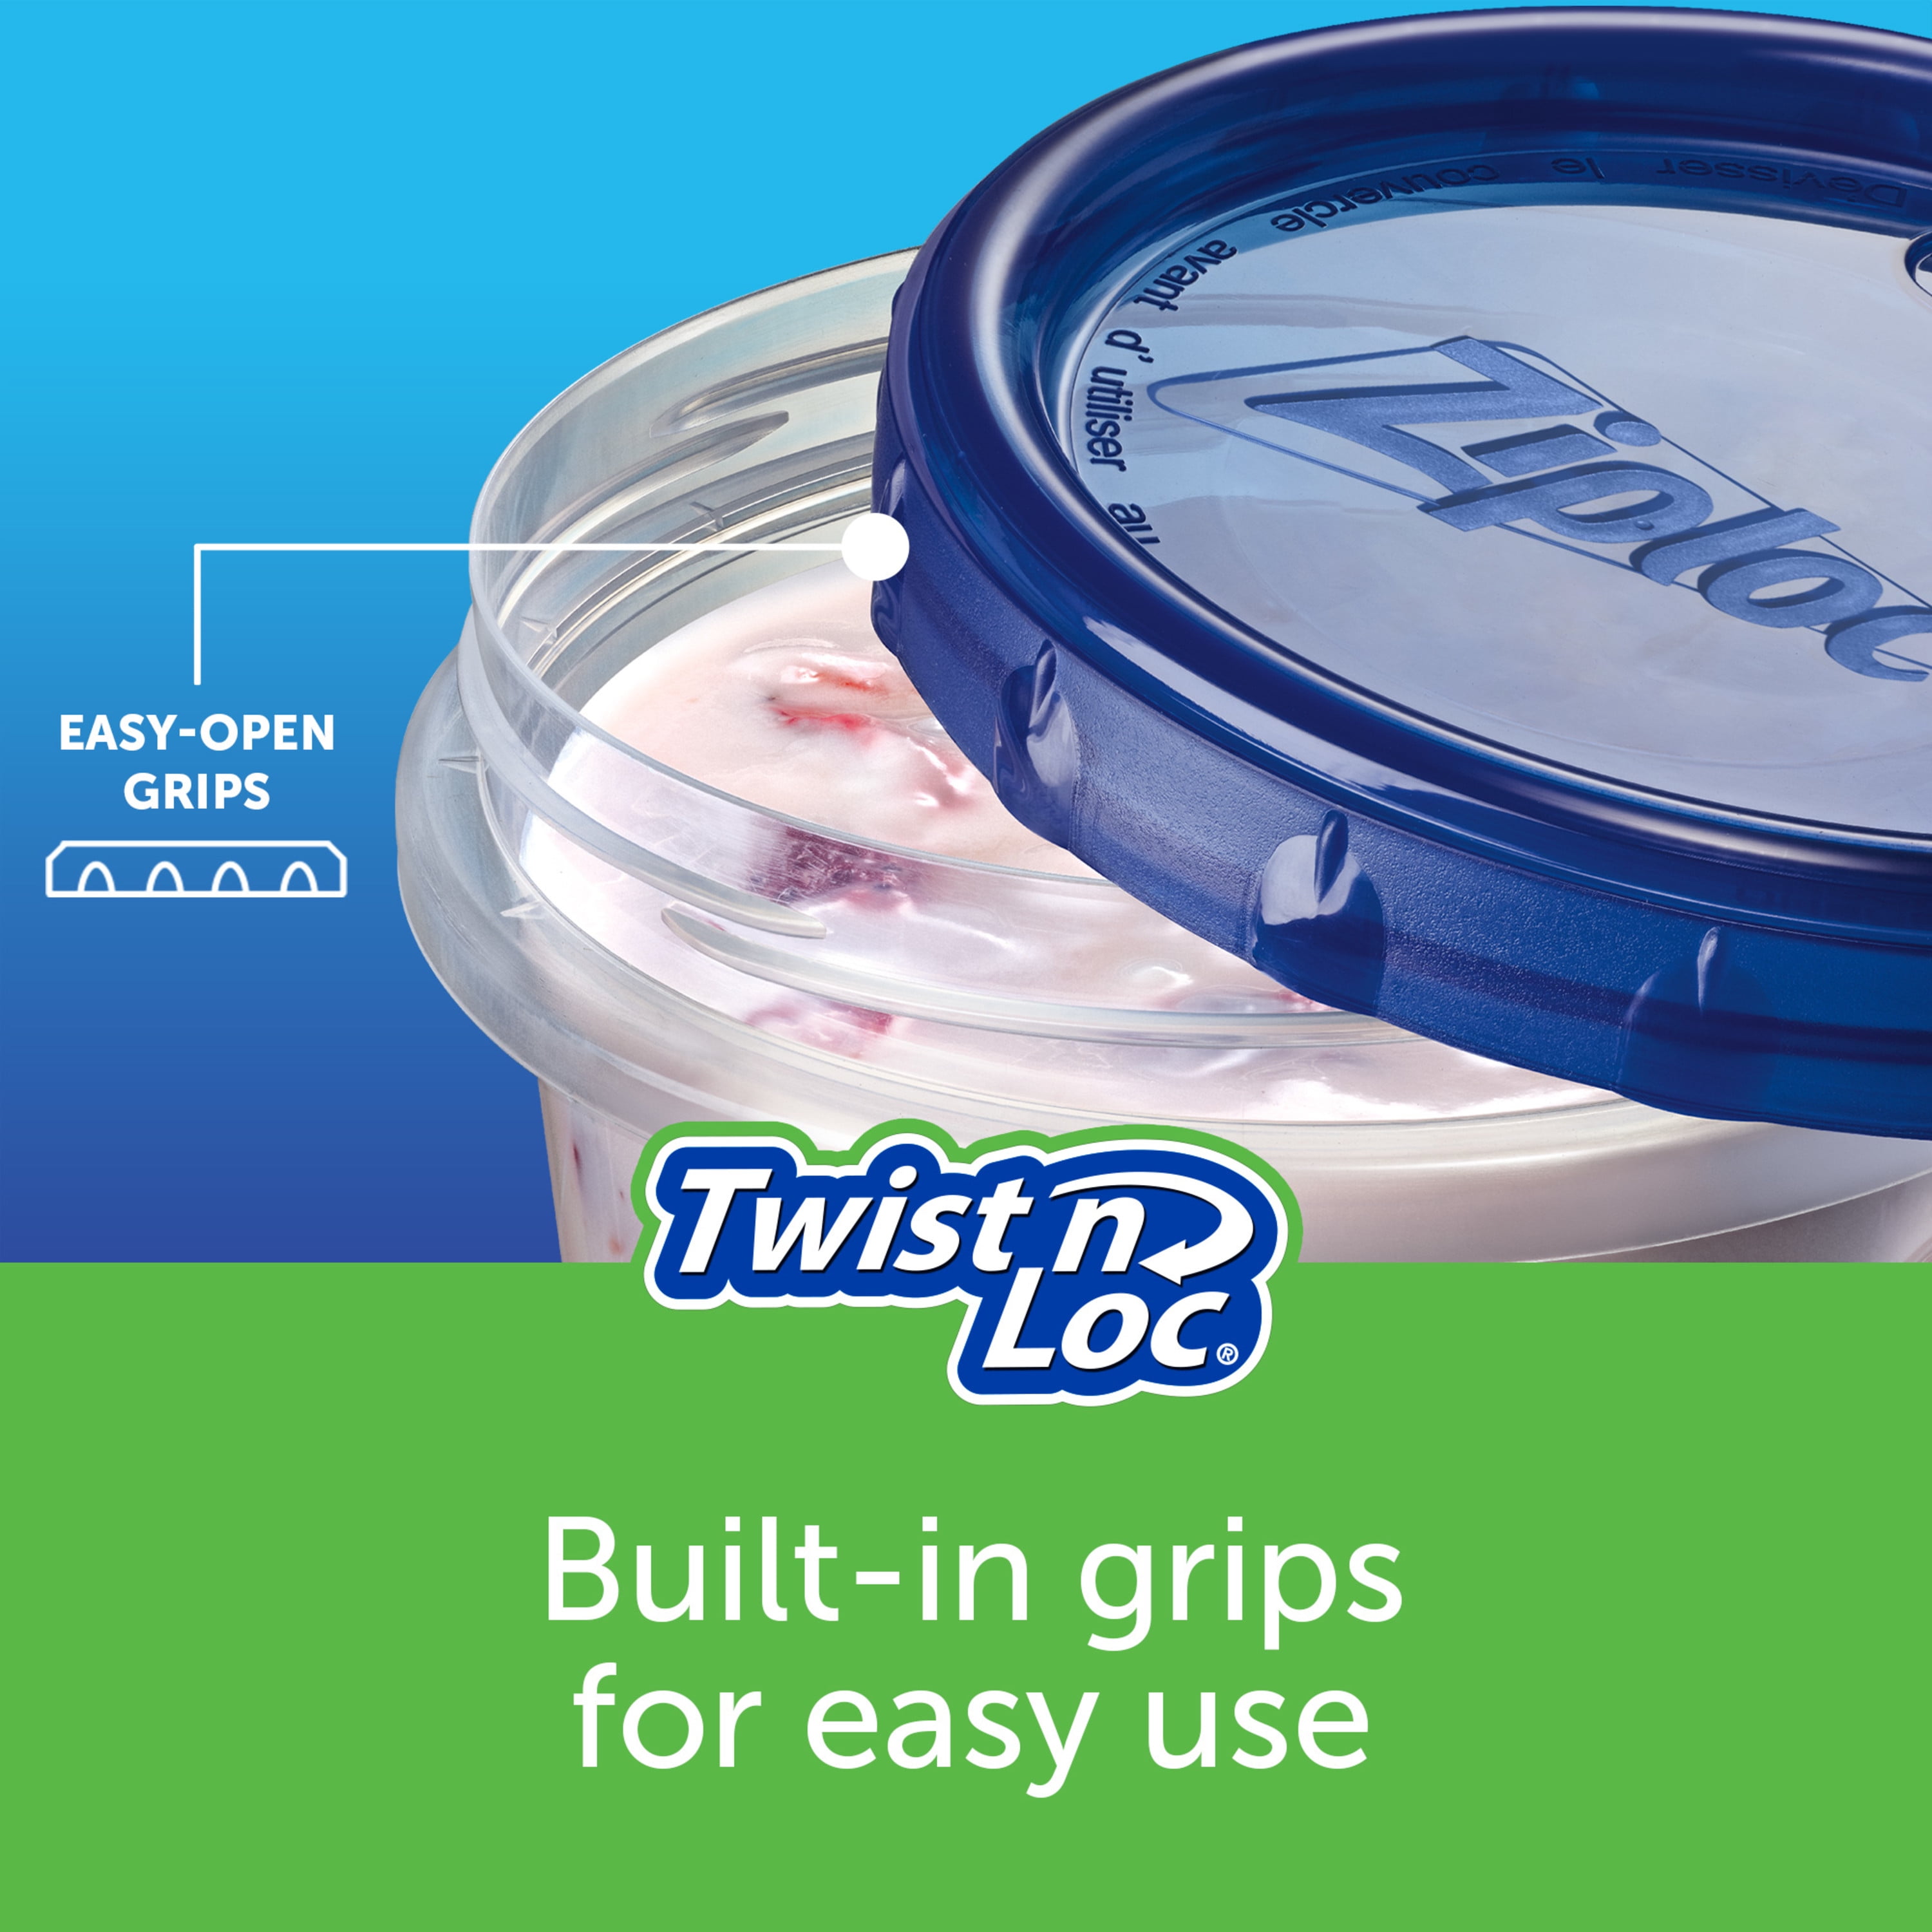 Buy Ziploc Twist 'n Loc Round Food Storage Container 1 Qt.